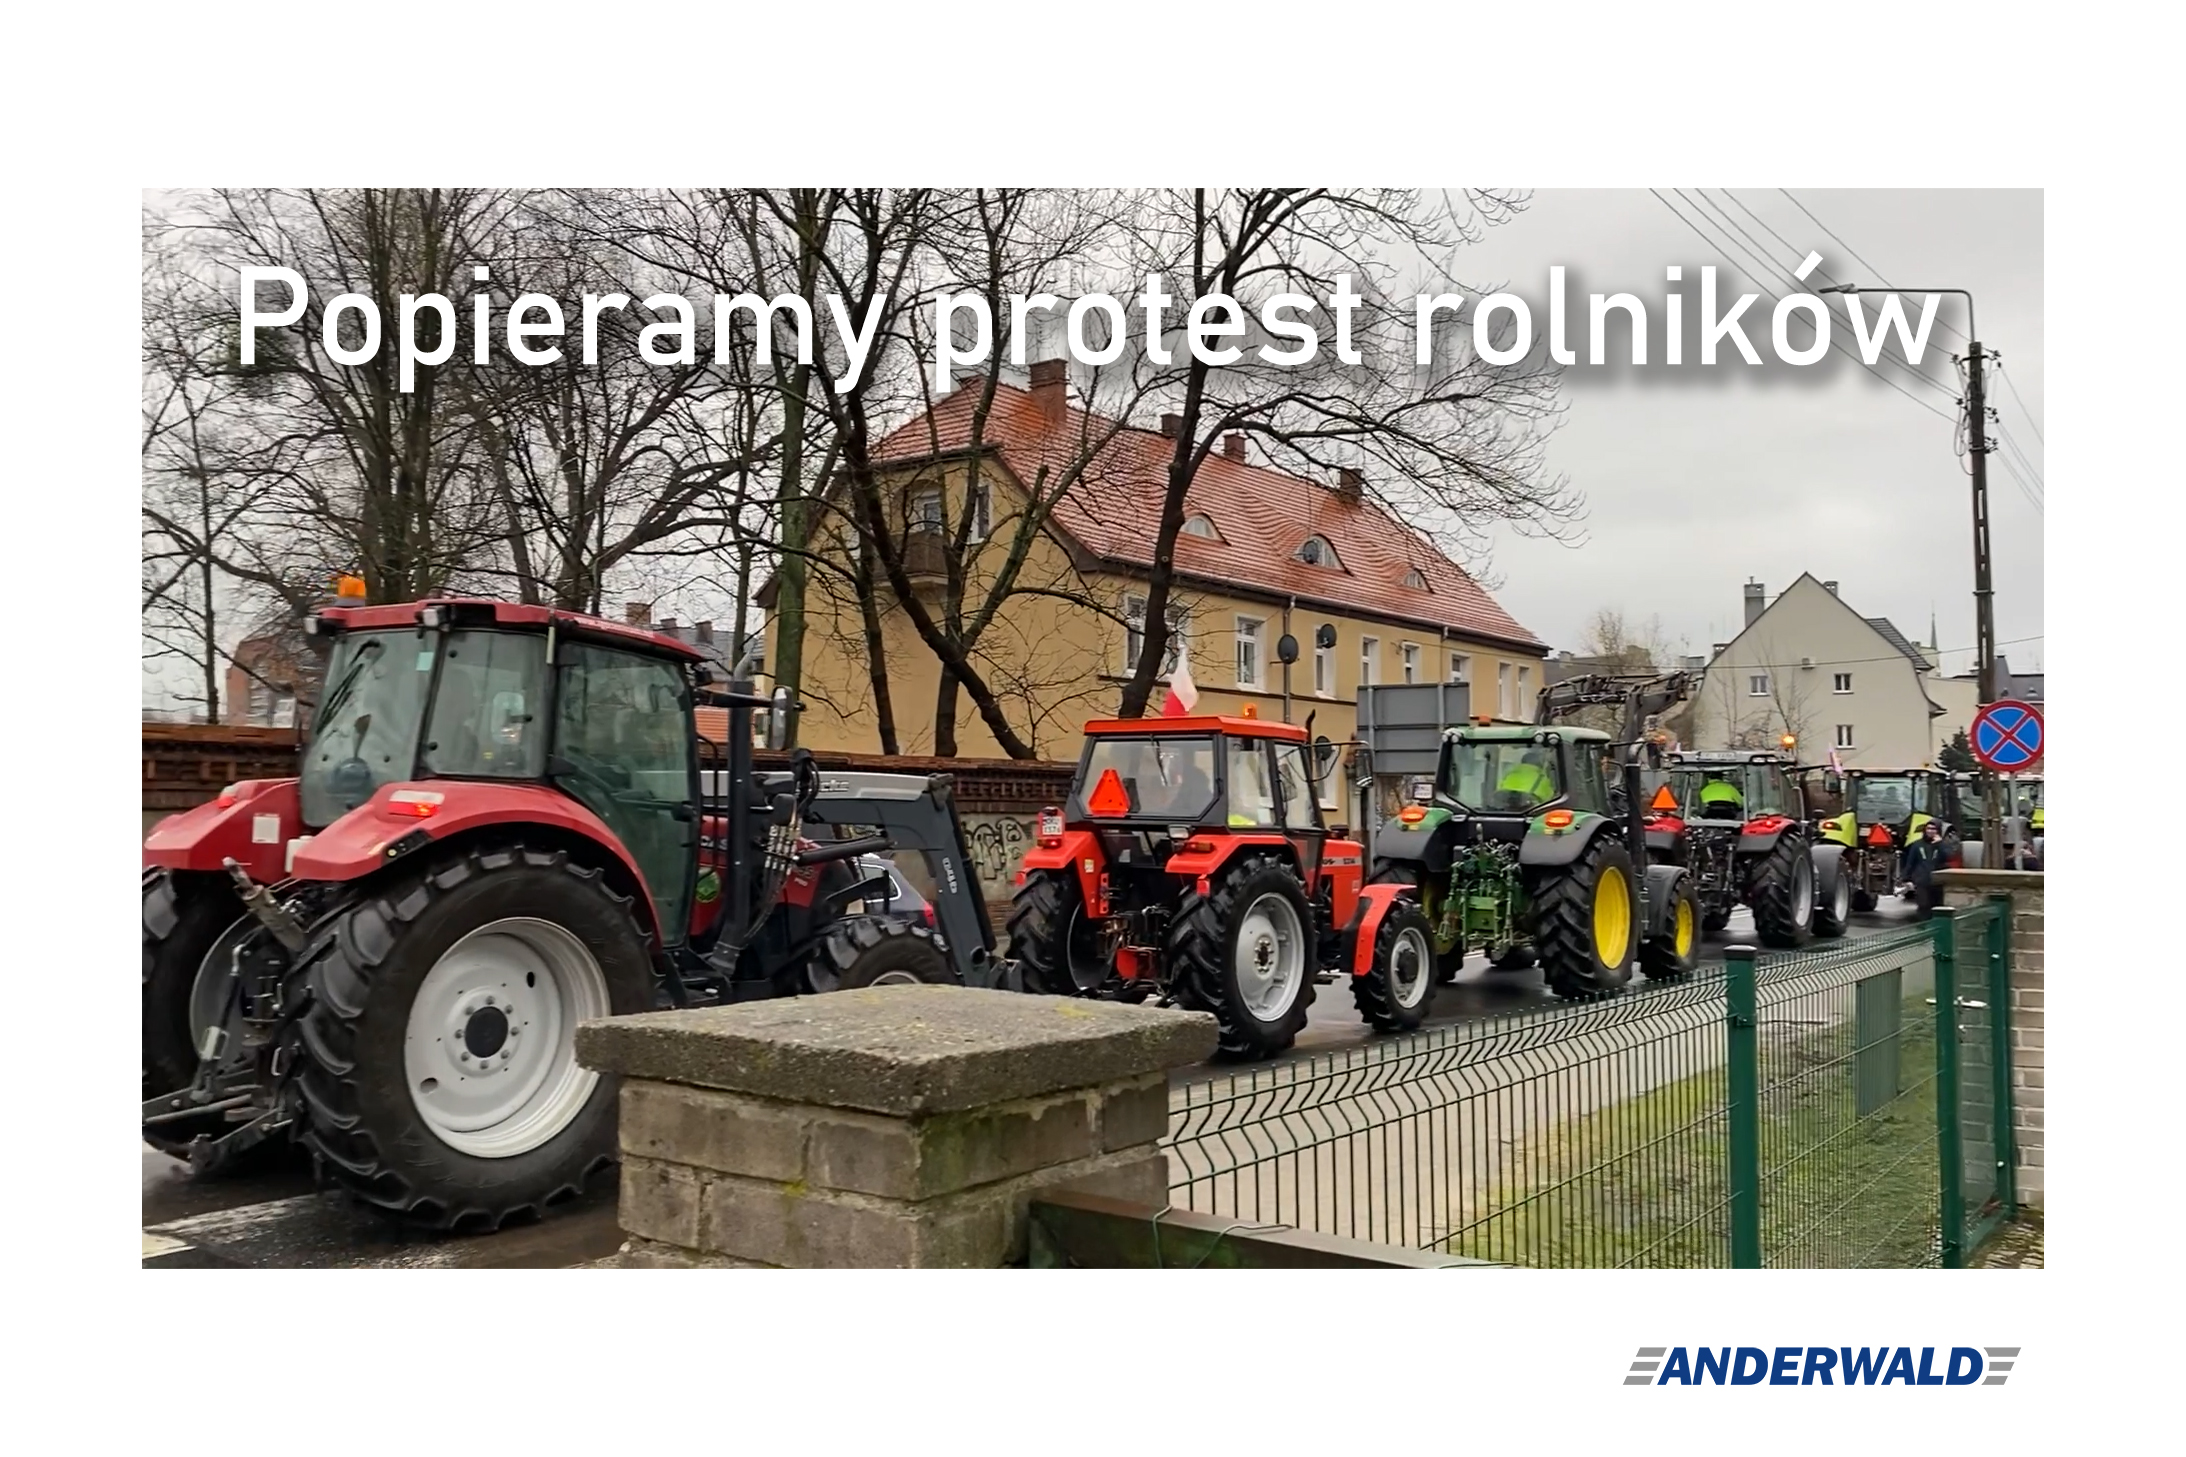 Popieramy protest rolników